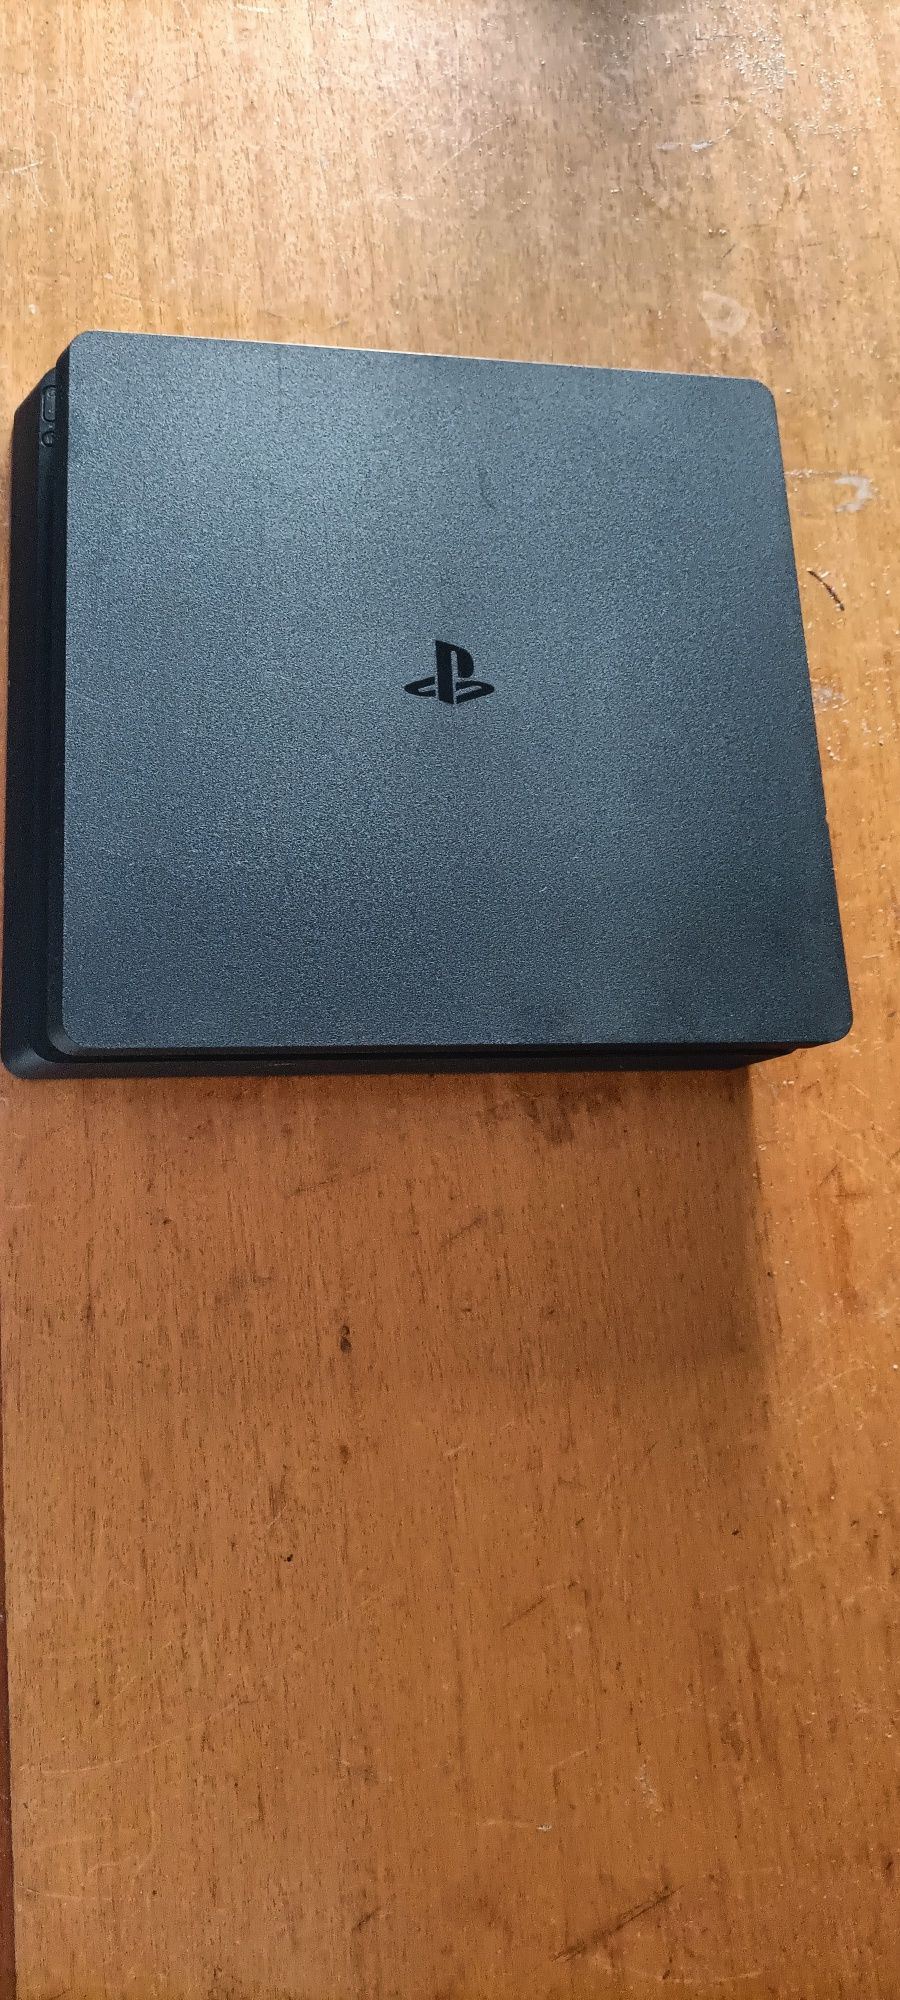 PS4 Slim 500gb com comando original, capa vermelha, 7 jogos originais